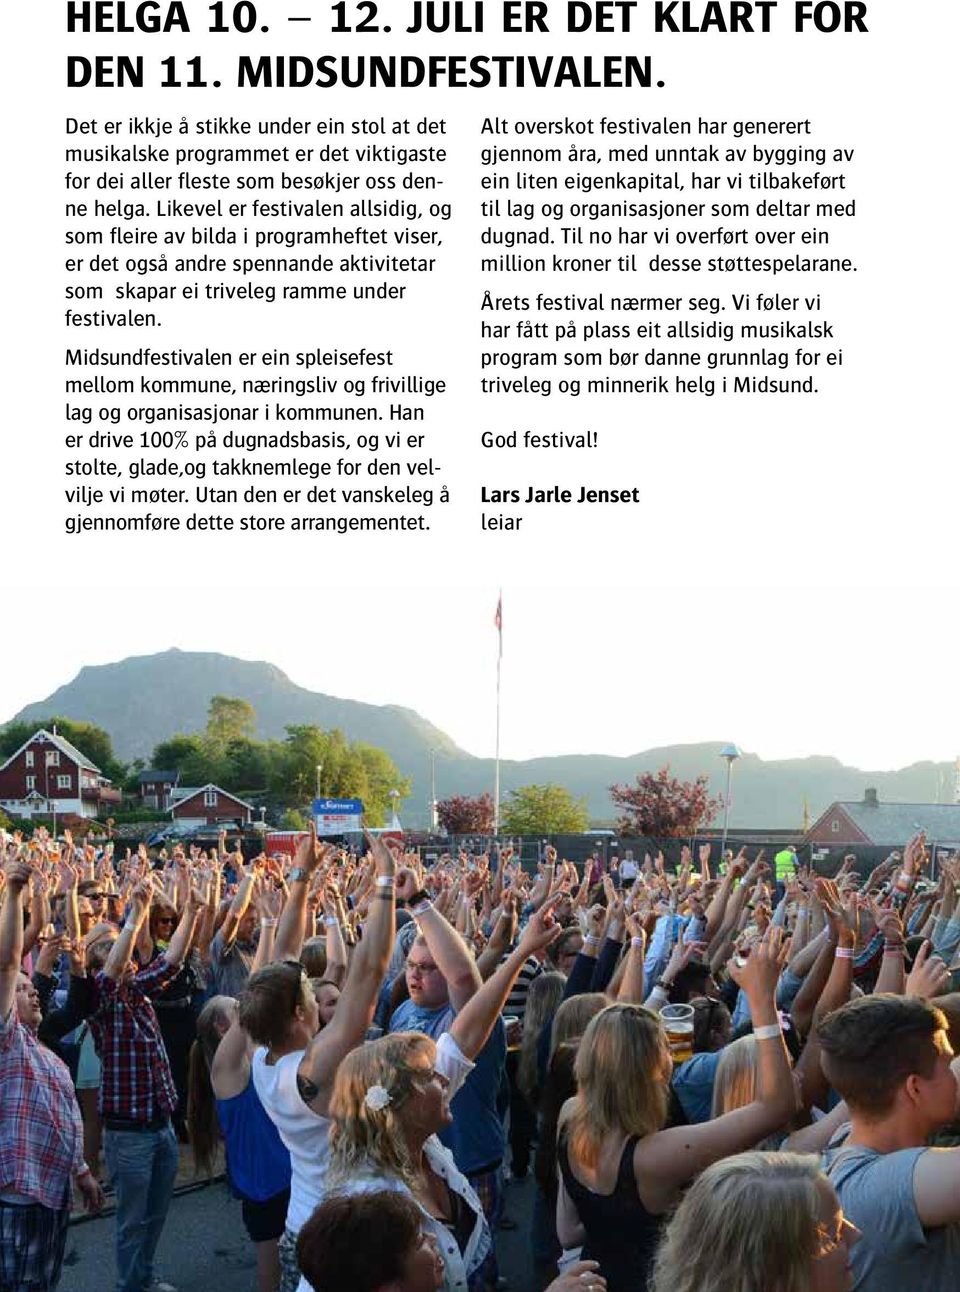 Midsundfestivalen er ein spleisefest mellom kommune, næringsliv og frivillige lag og organisasjonar i kommunen.